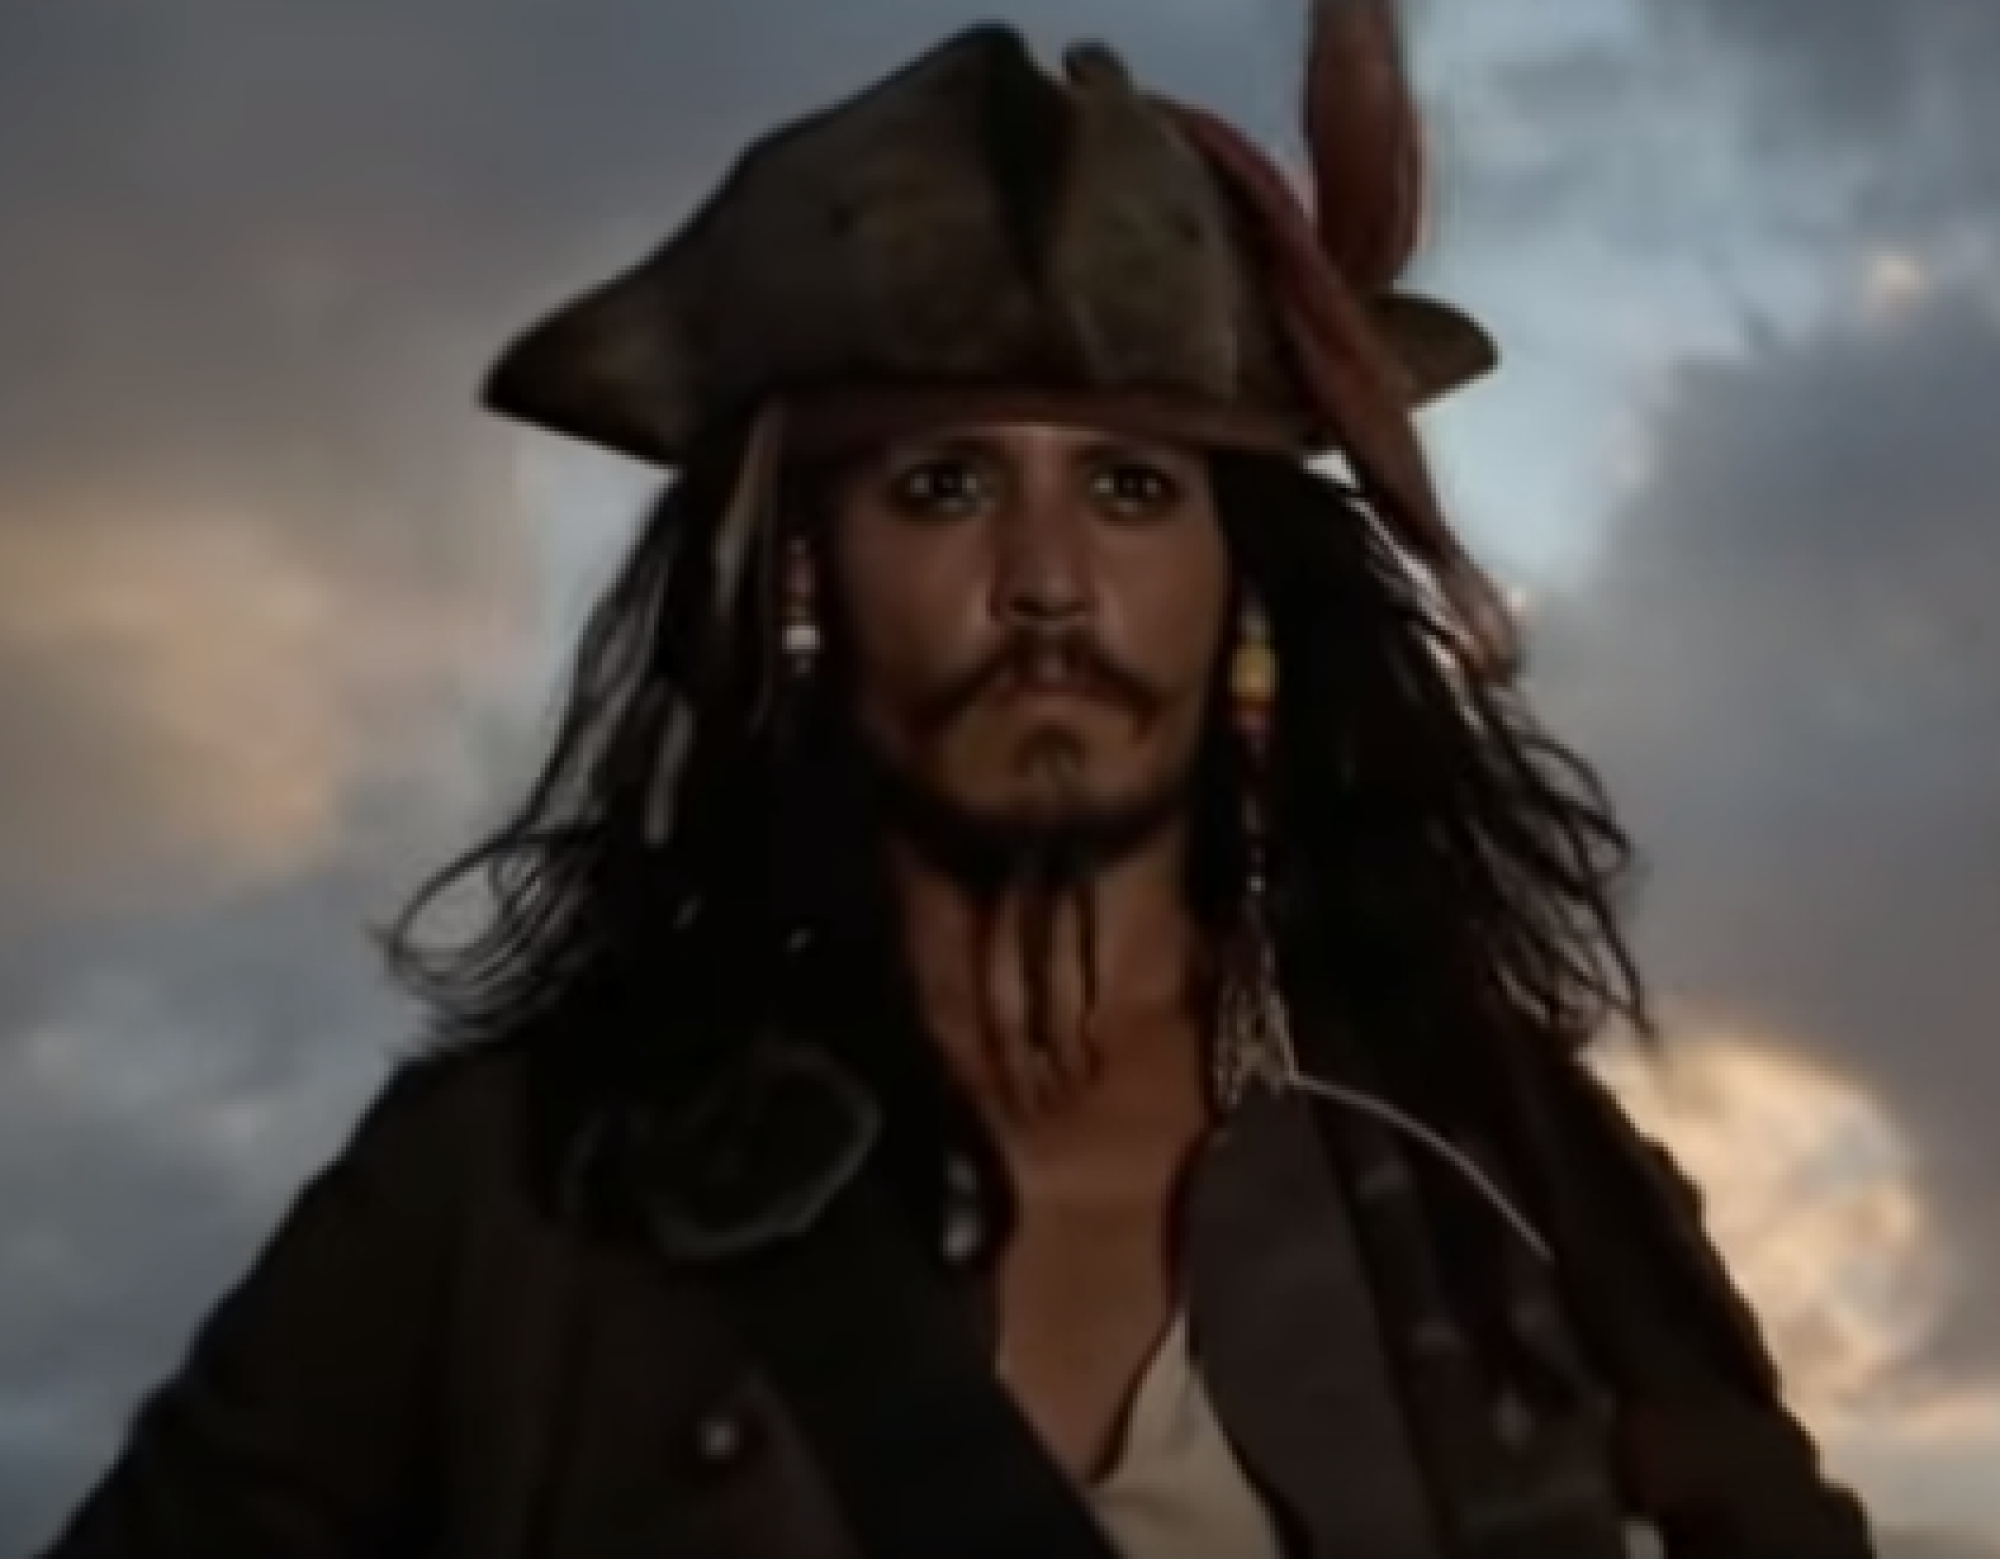 Джонни Депп может вернуться в «Пираты Карибского моря»